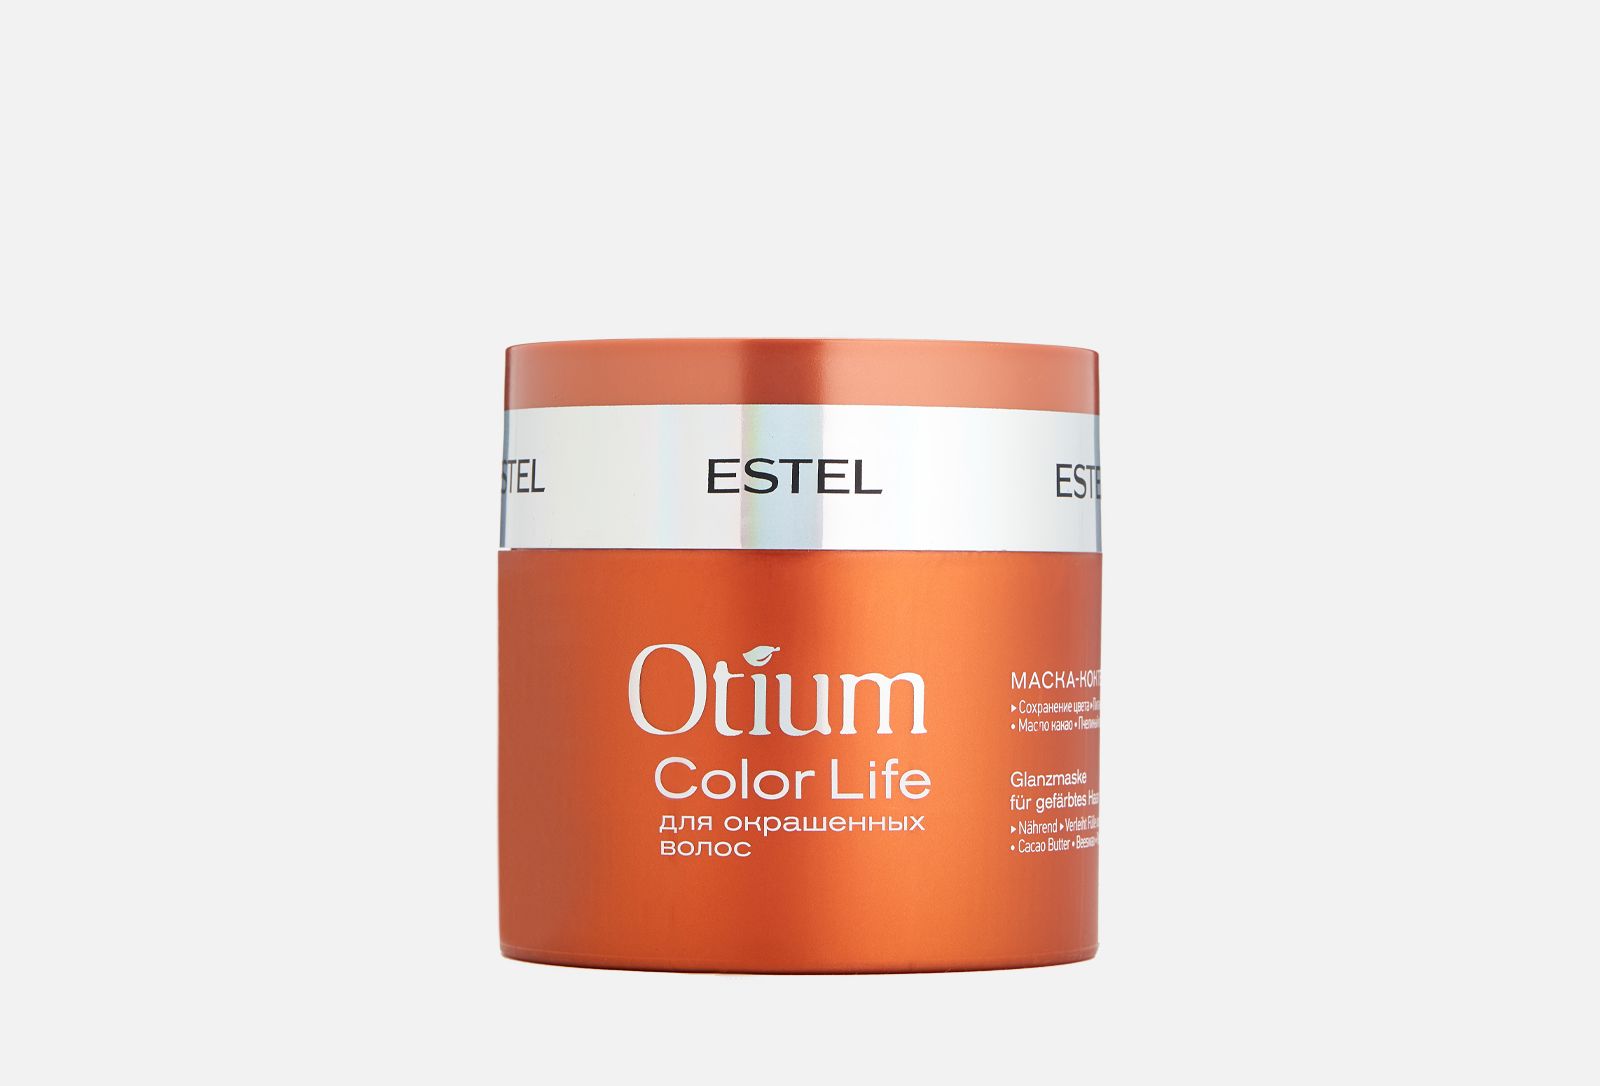 Эстель для окрашенных волос. Маска-коктейль для окрашенных волос Otium Color Life, 300 мл. Estel маска для волос Otium Miracle Revive. Estel маска для окрашенных волос Otium Color. Estel Otium Color Life маска.